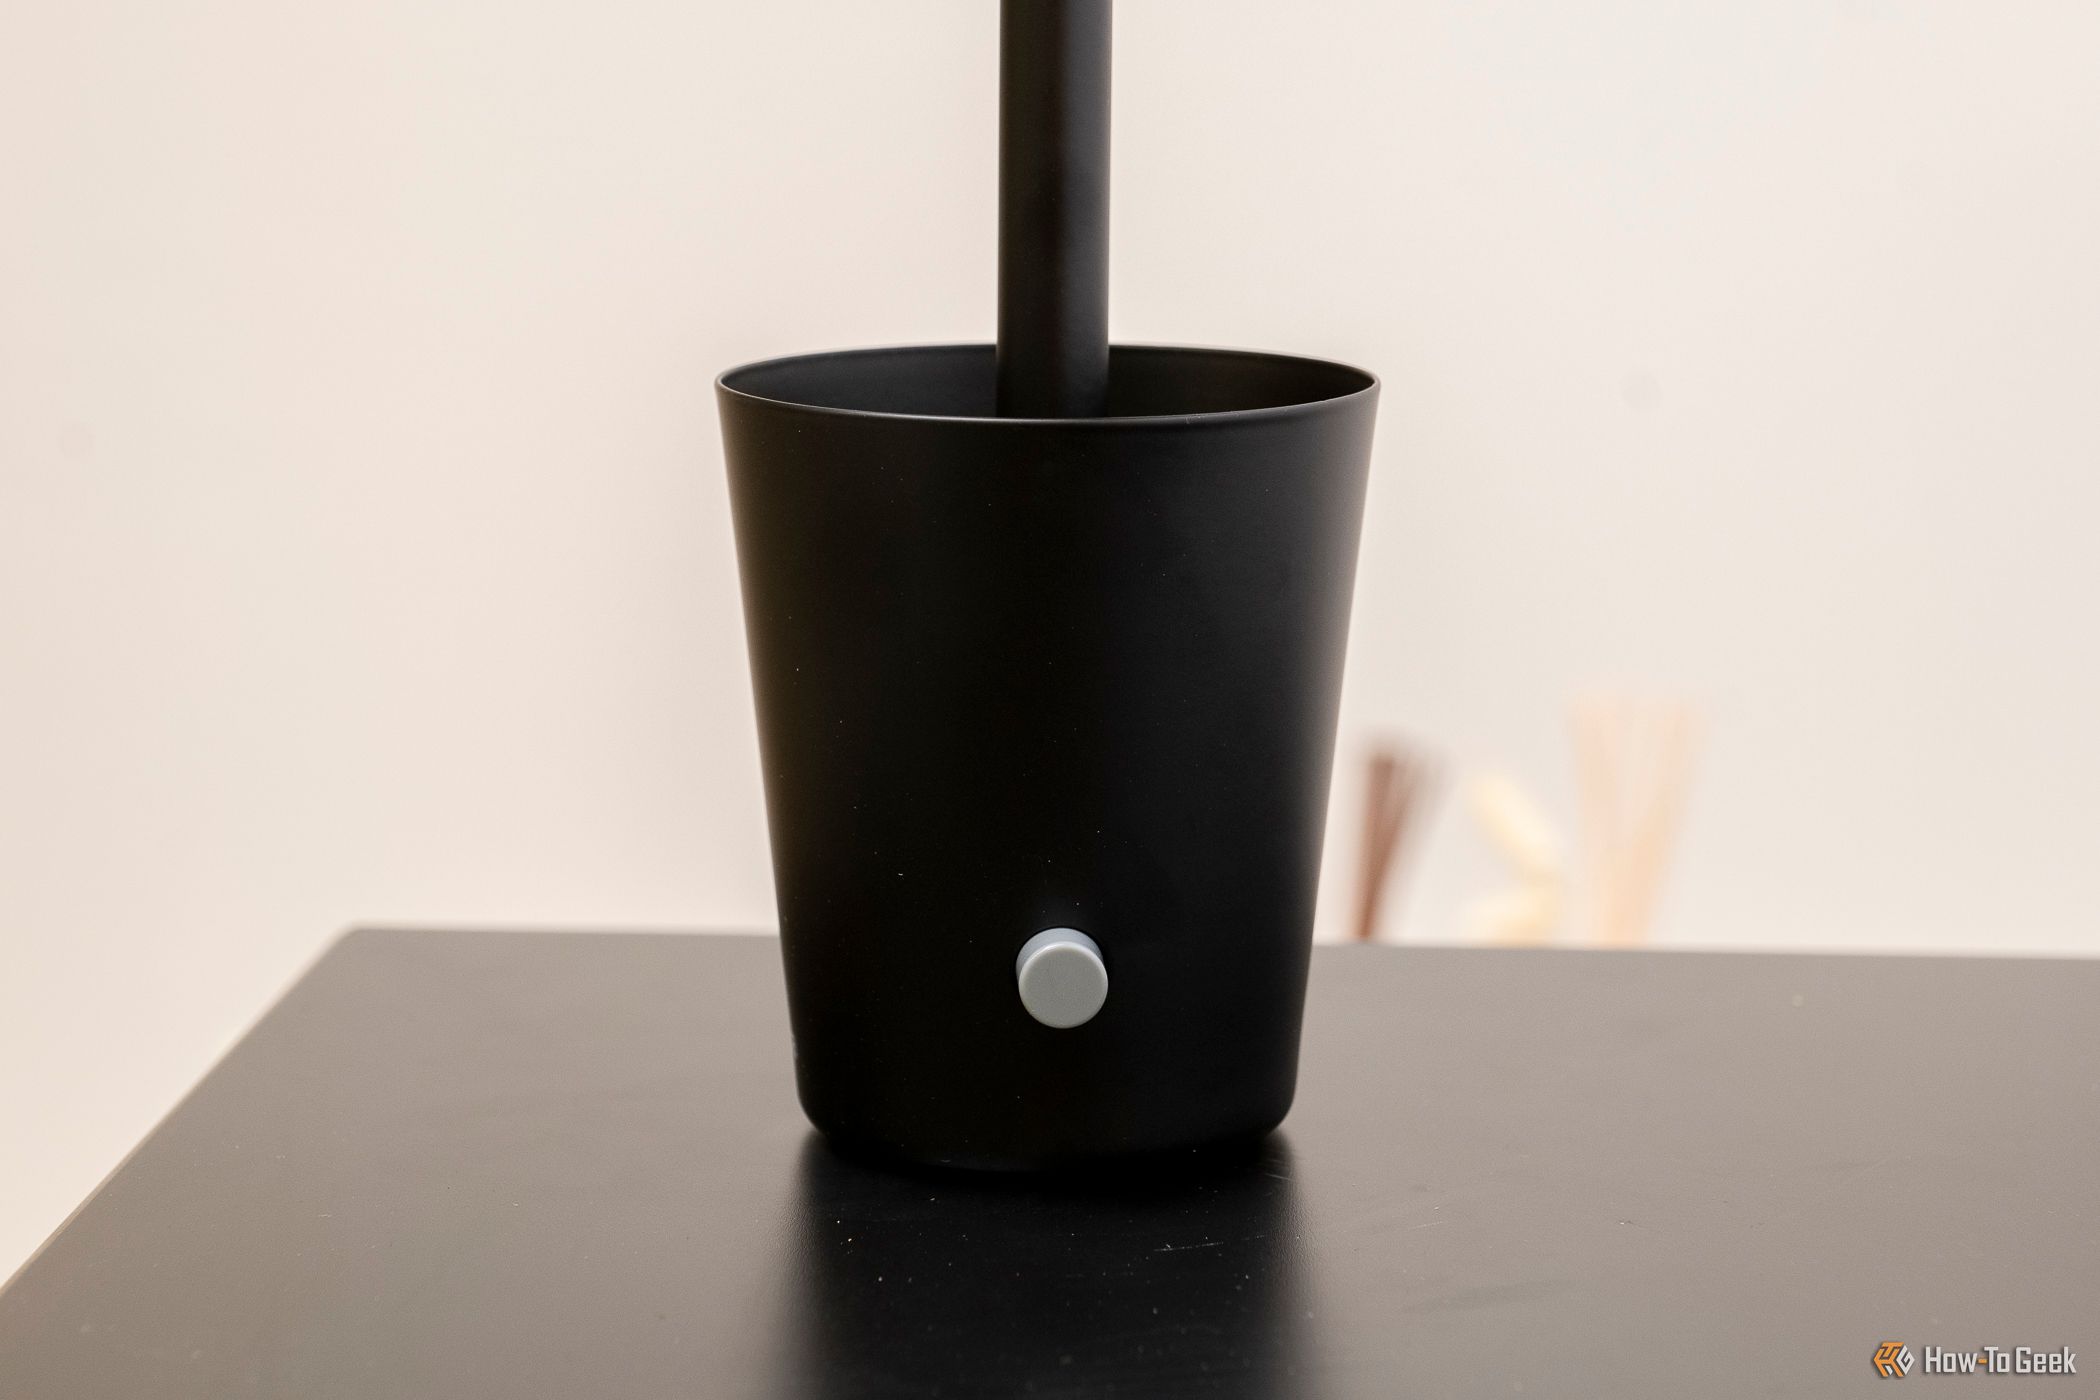 The Nanoleaf Umbra Cup Smart Lamp power knob